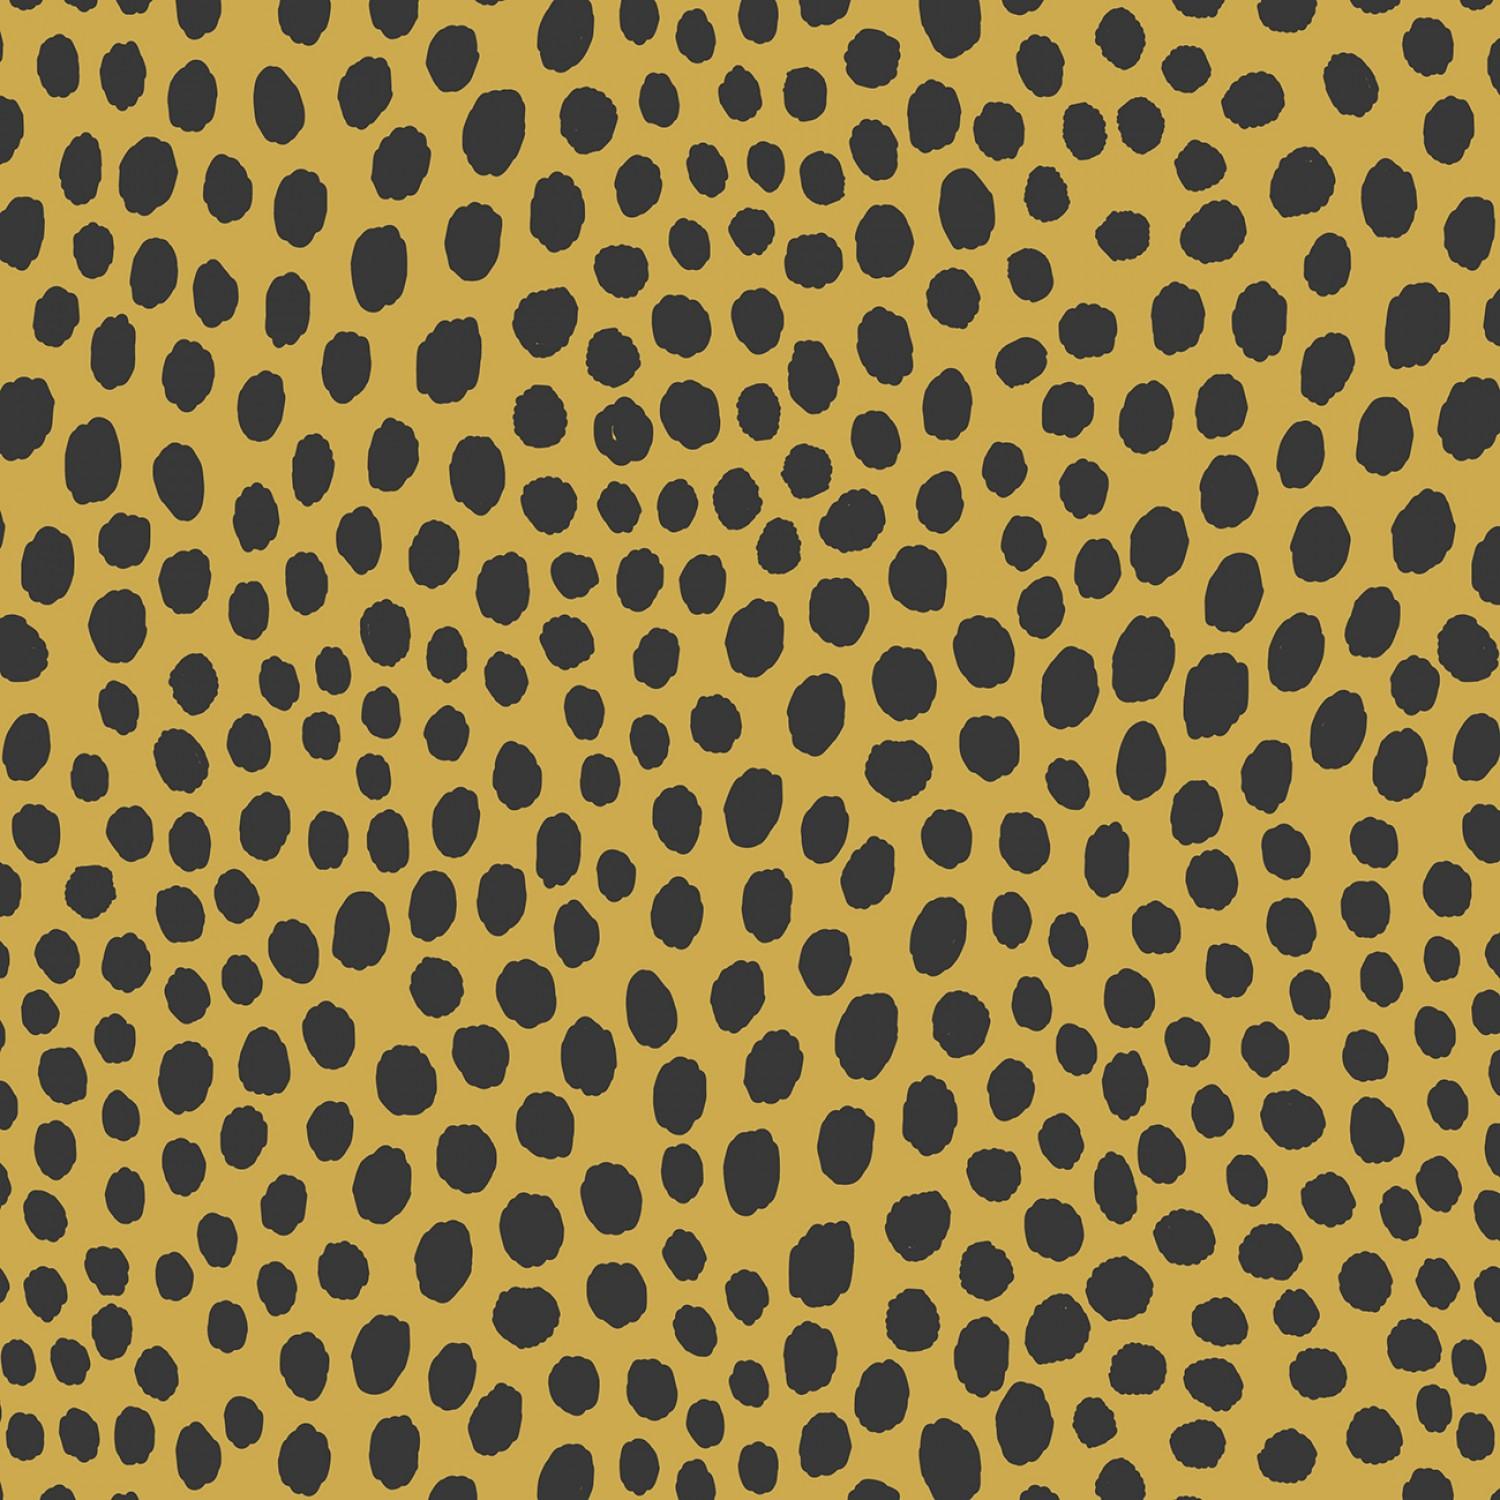 Small Things Wild Animals - 698-Cheetah